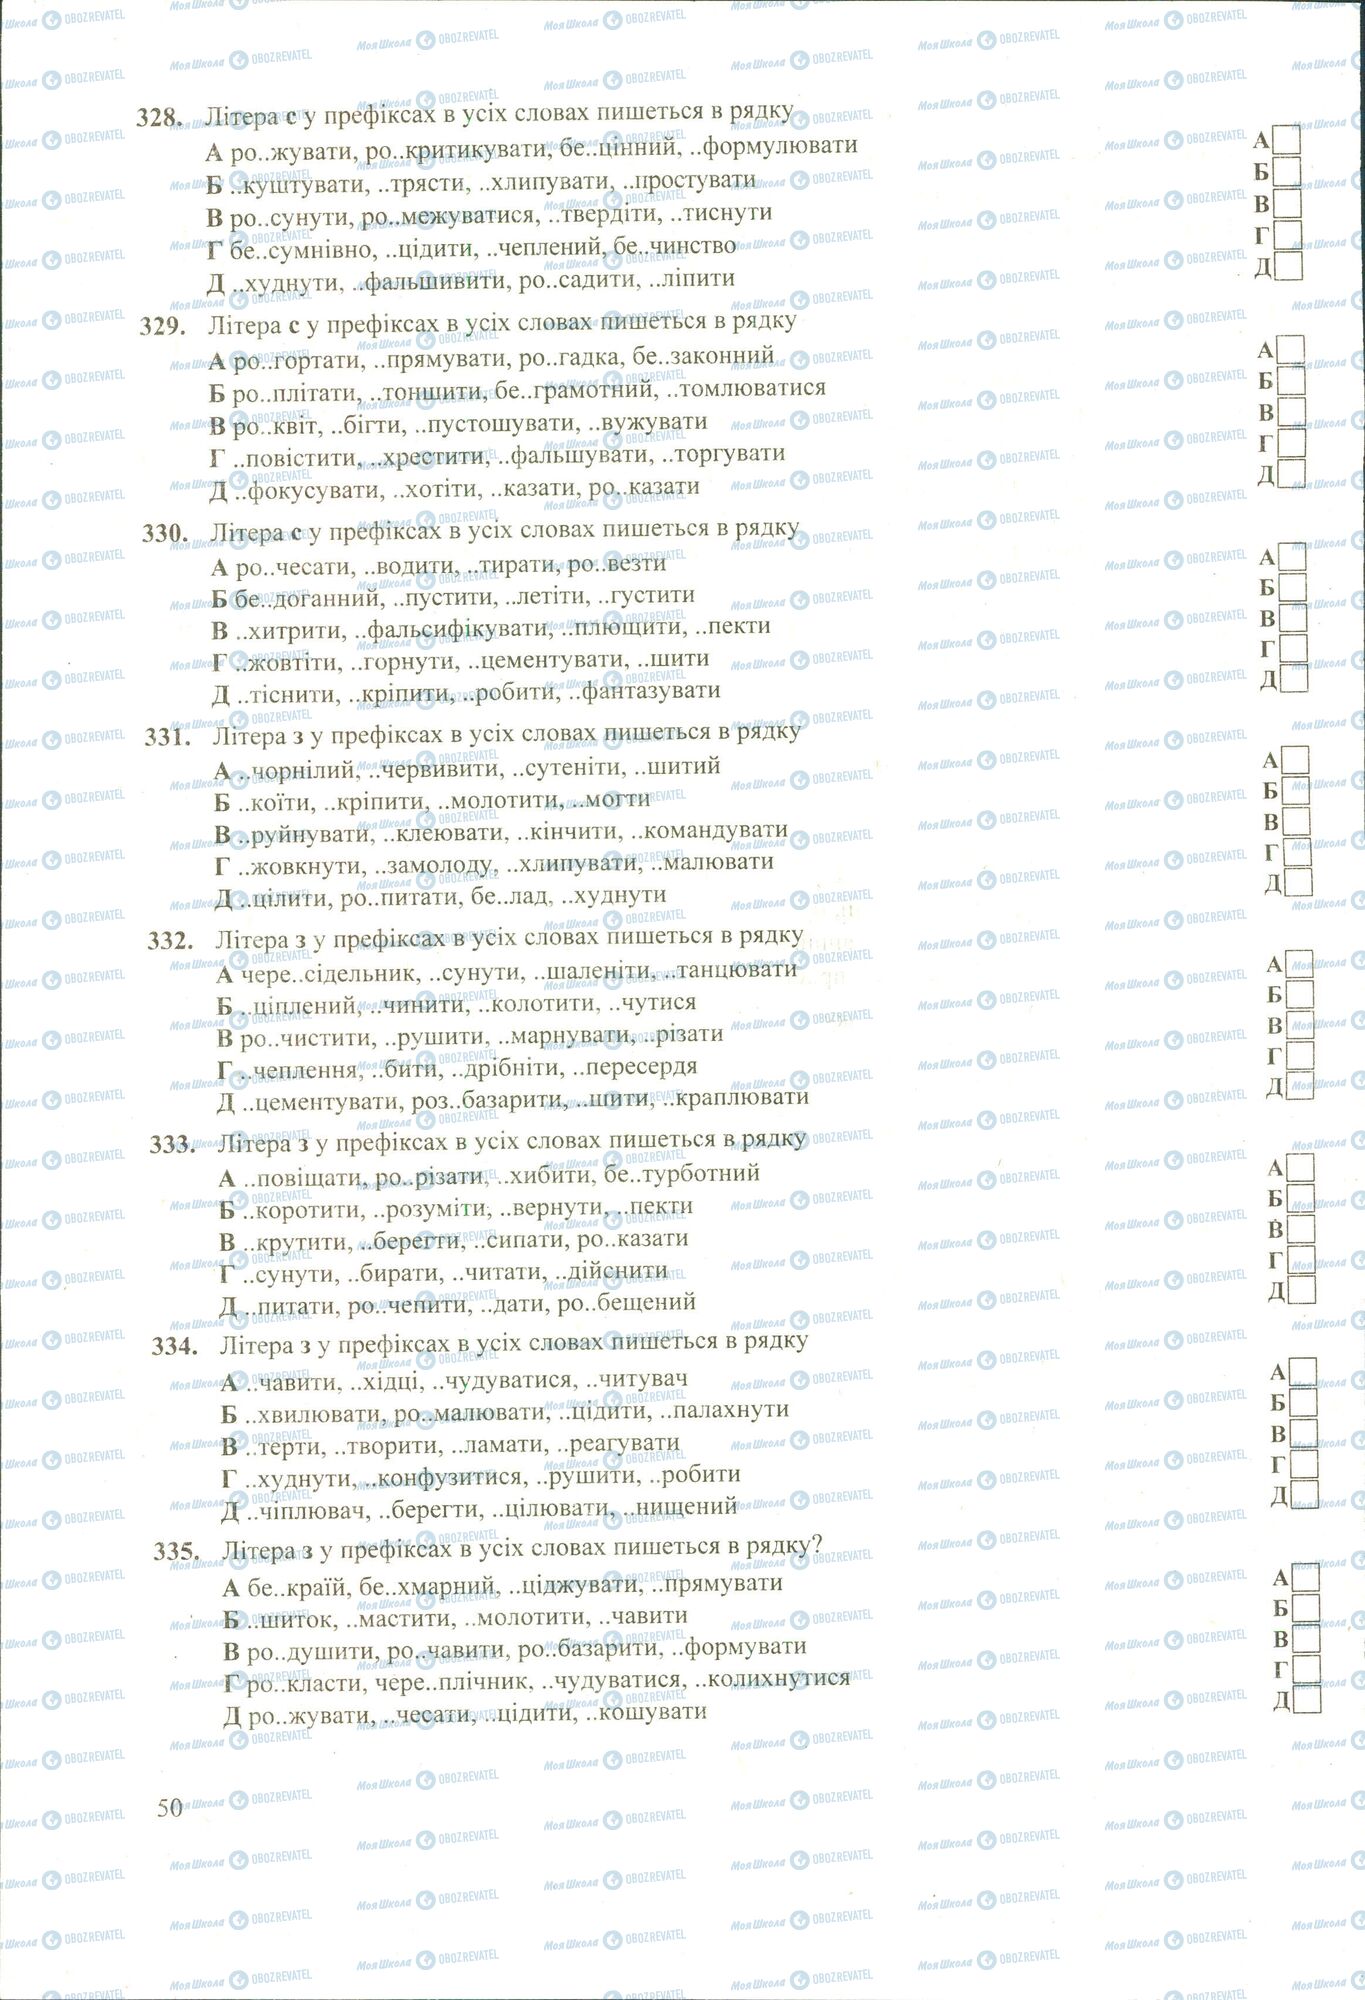 ЗНО Укр мова 11 класс страница 328-335